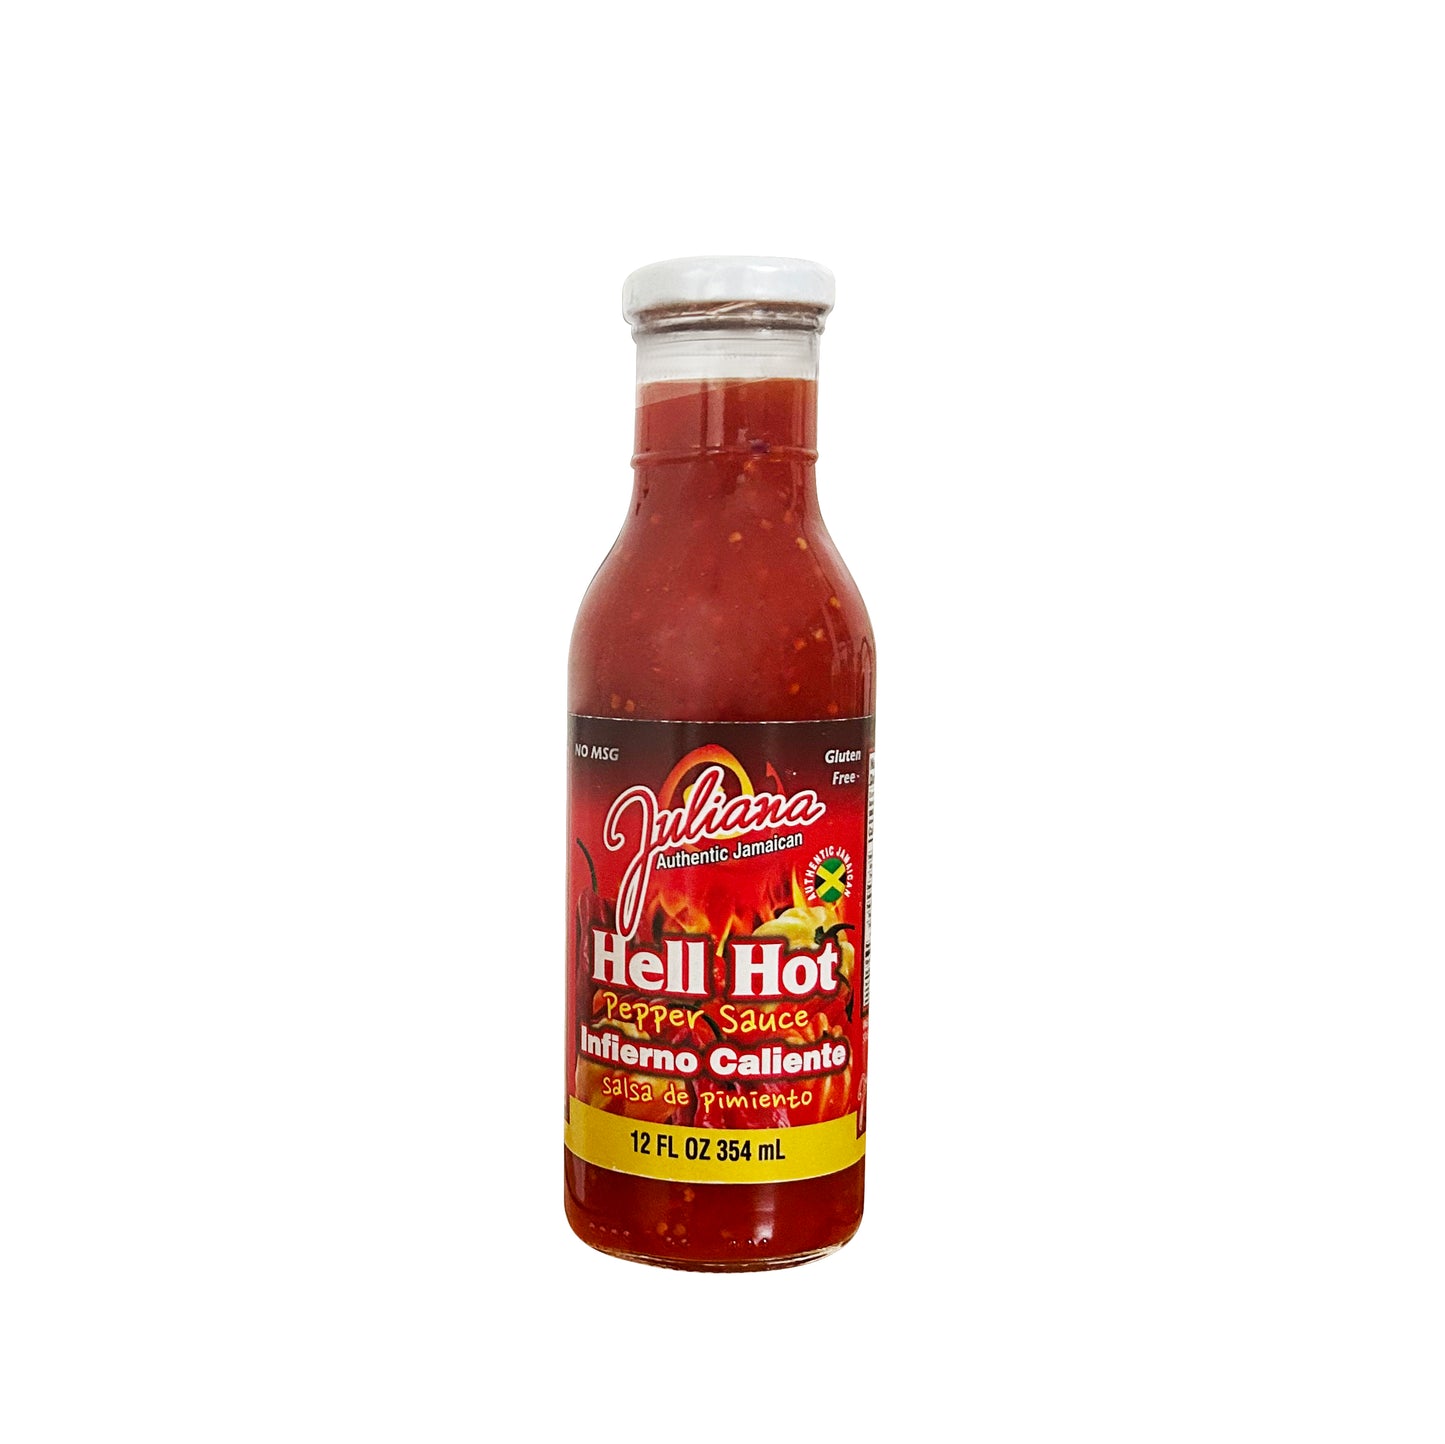 Juliana Hell Hot Pepper Sauce